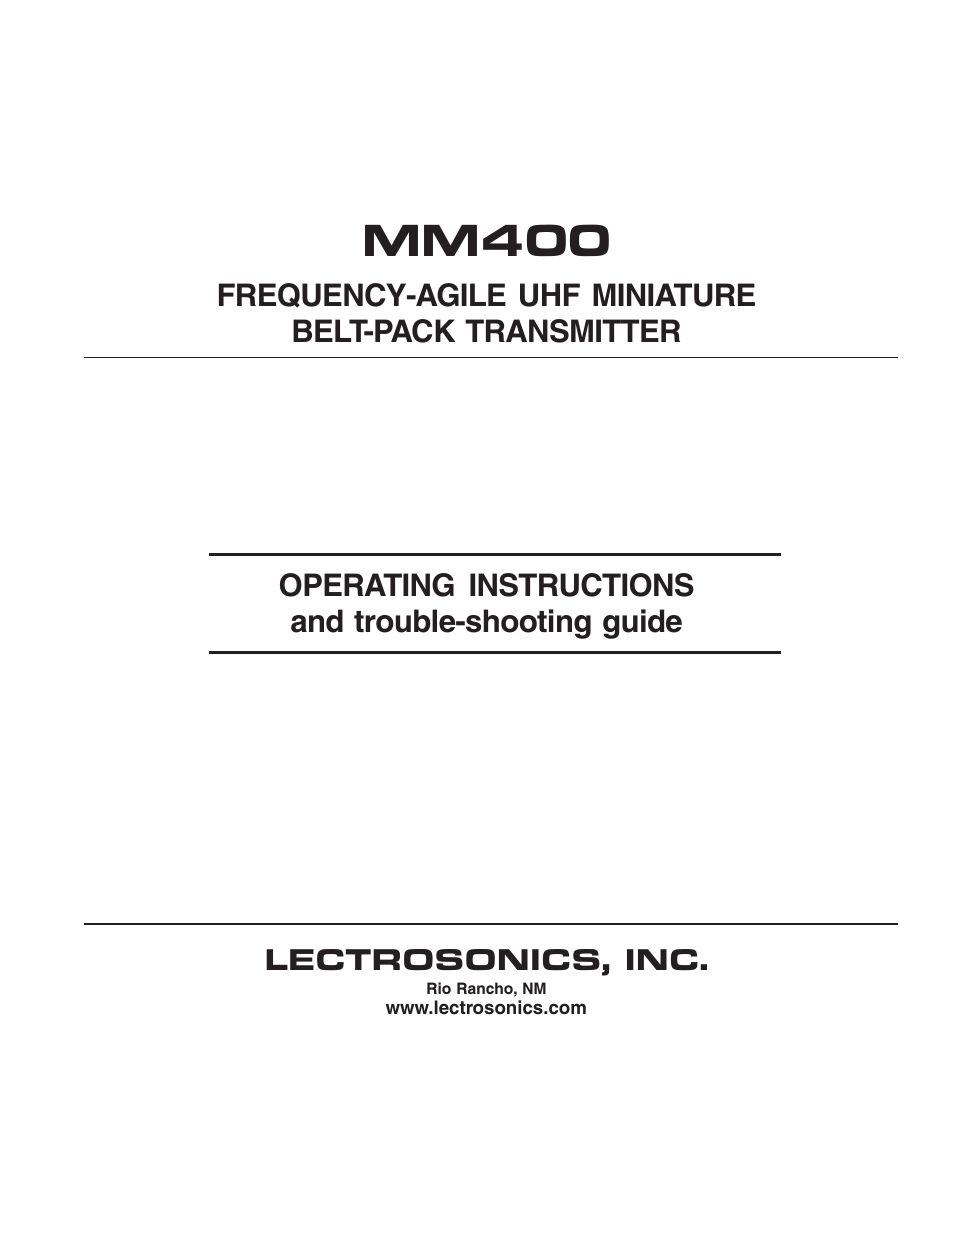 MM400 - Manual